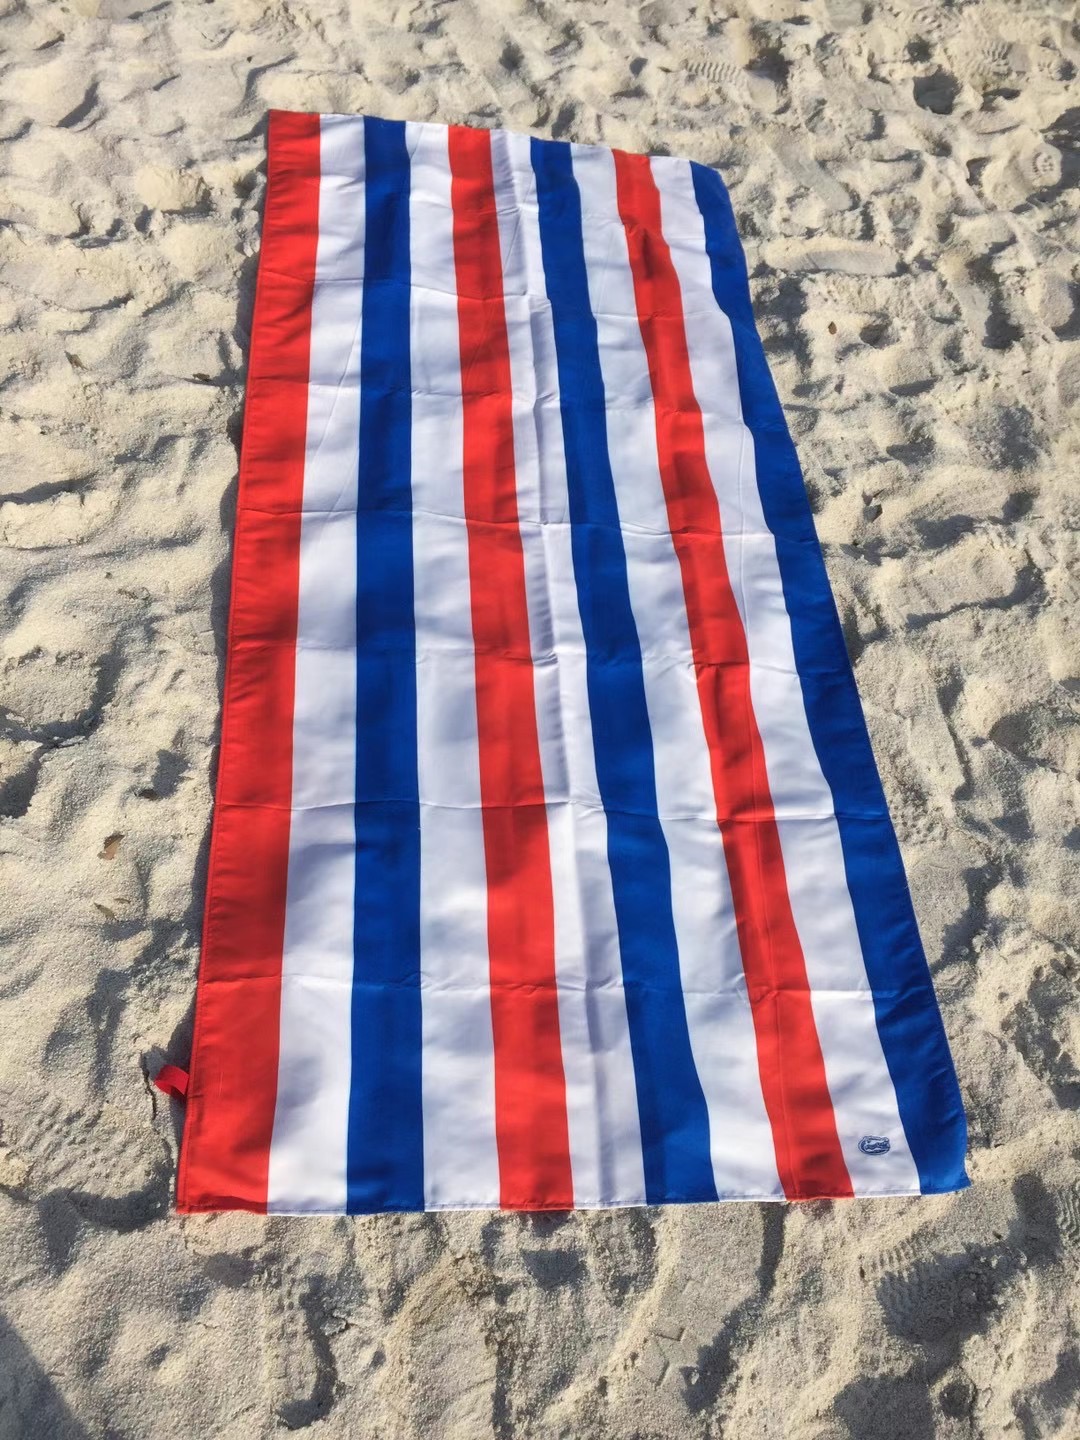 Textile-Flex launched Microfiber Beach Towel